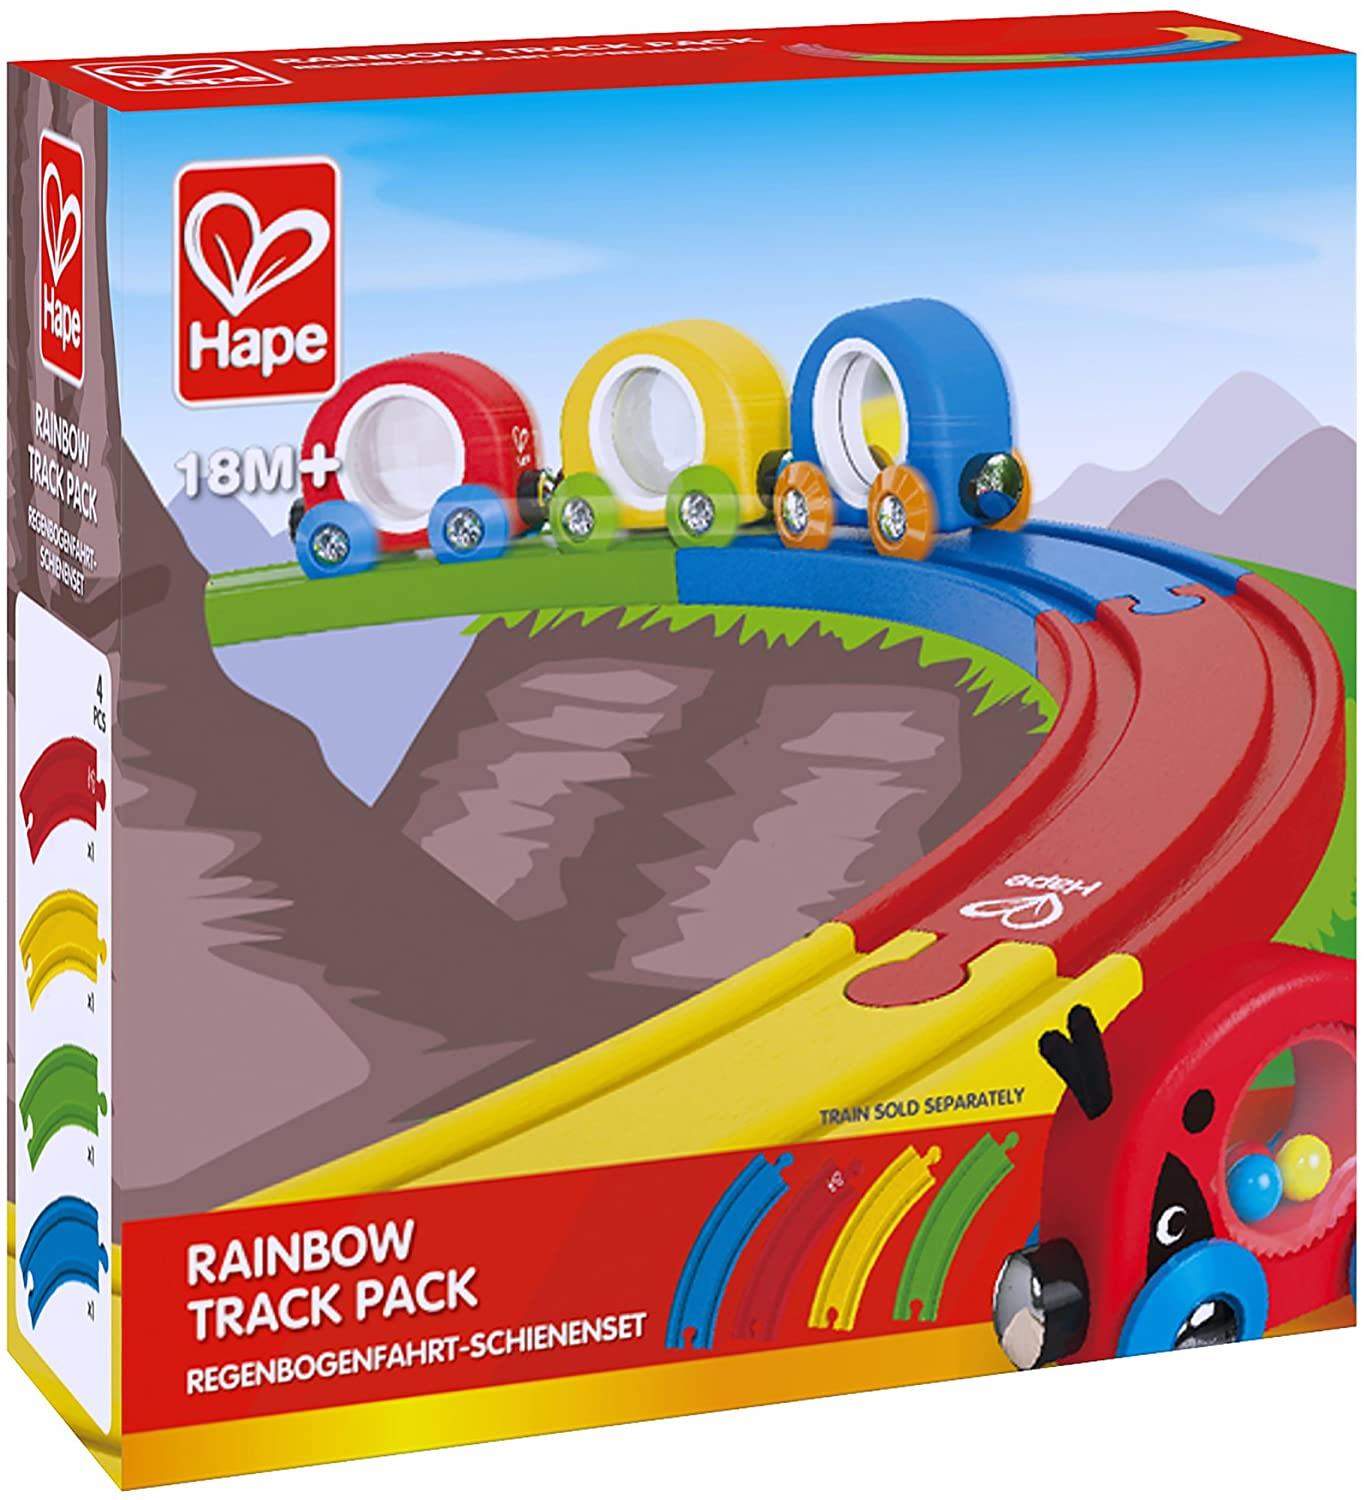 Hape Rainbow Track Pack